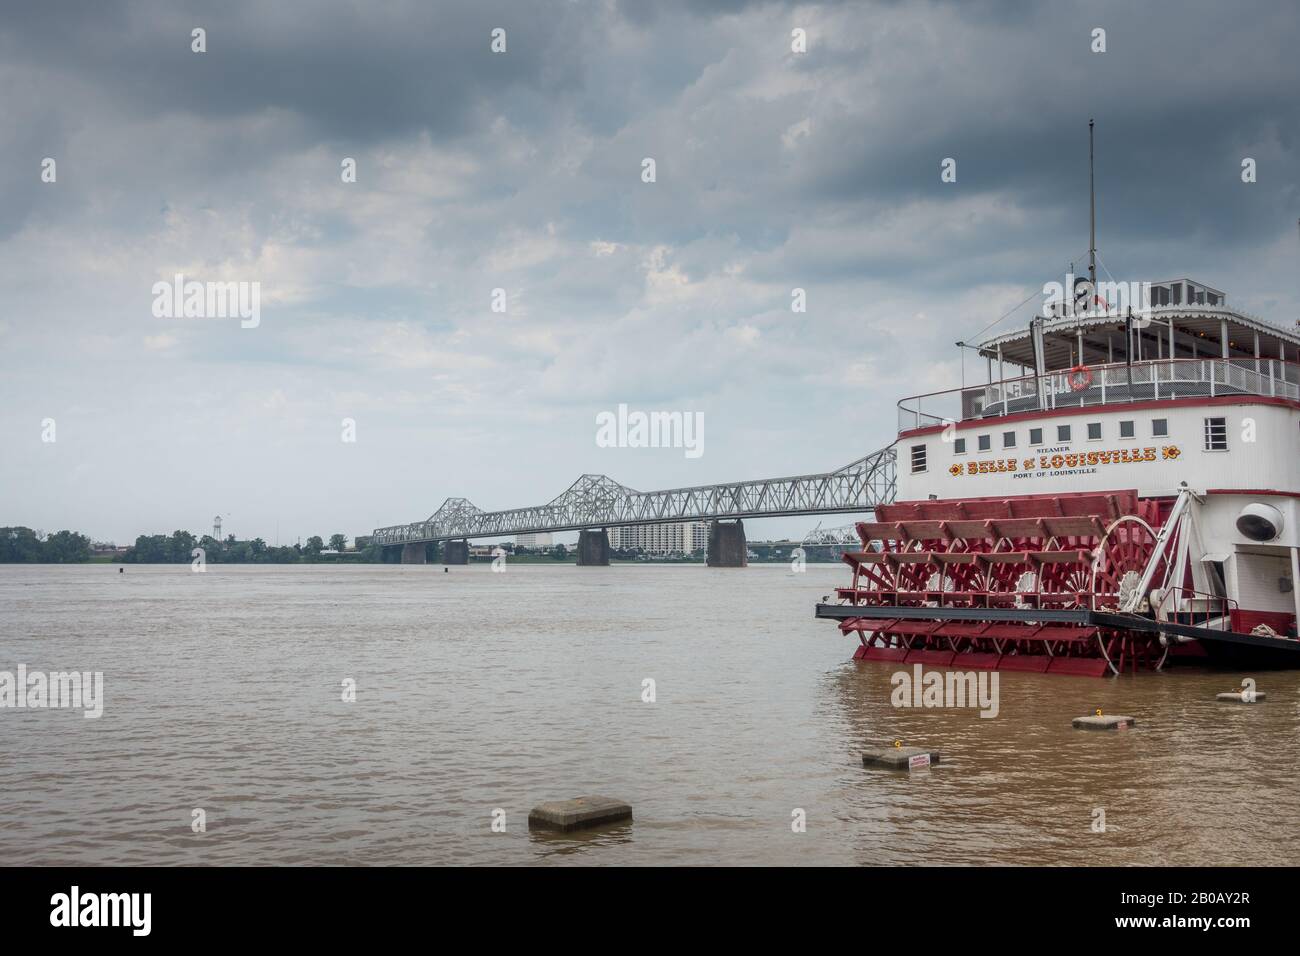 Louisville, Kentucky, 17 de julio de 2015: El barco de vapor Belle of Louisville está amarrado en el muelle del centro de Louisville Foto de stock